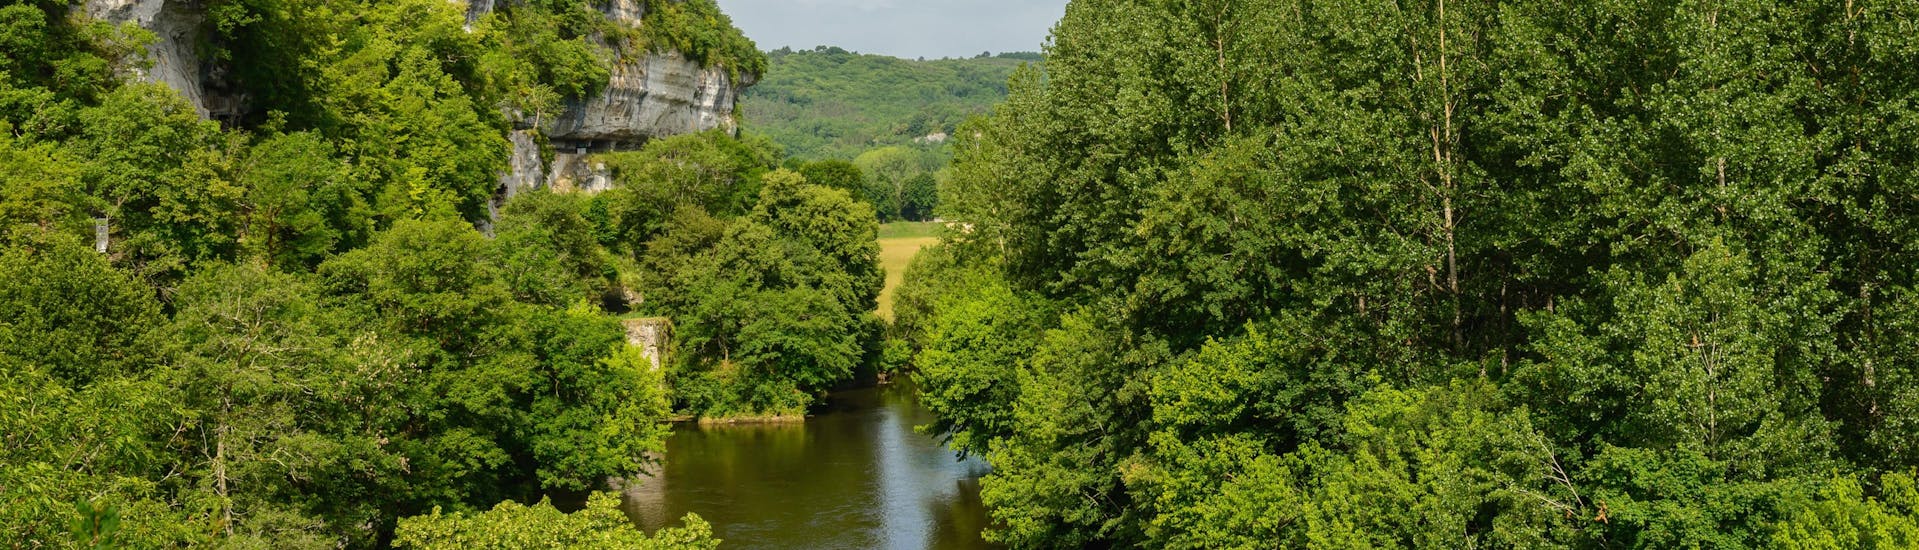 Vue de la sauvage vallée de la Vézère en Dordogne où les touristes apprécient de faire du canoë.